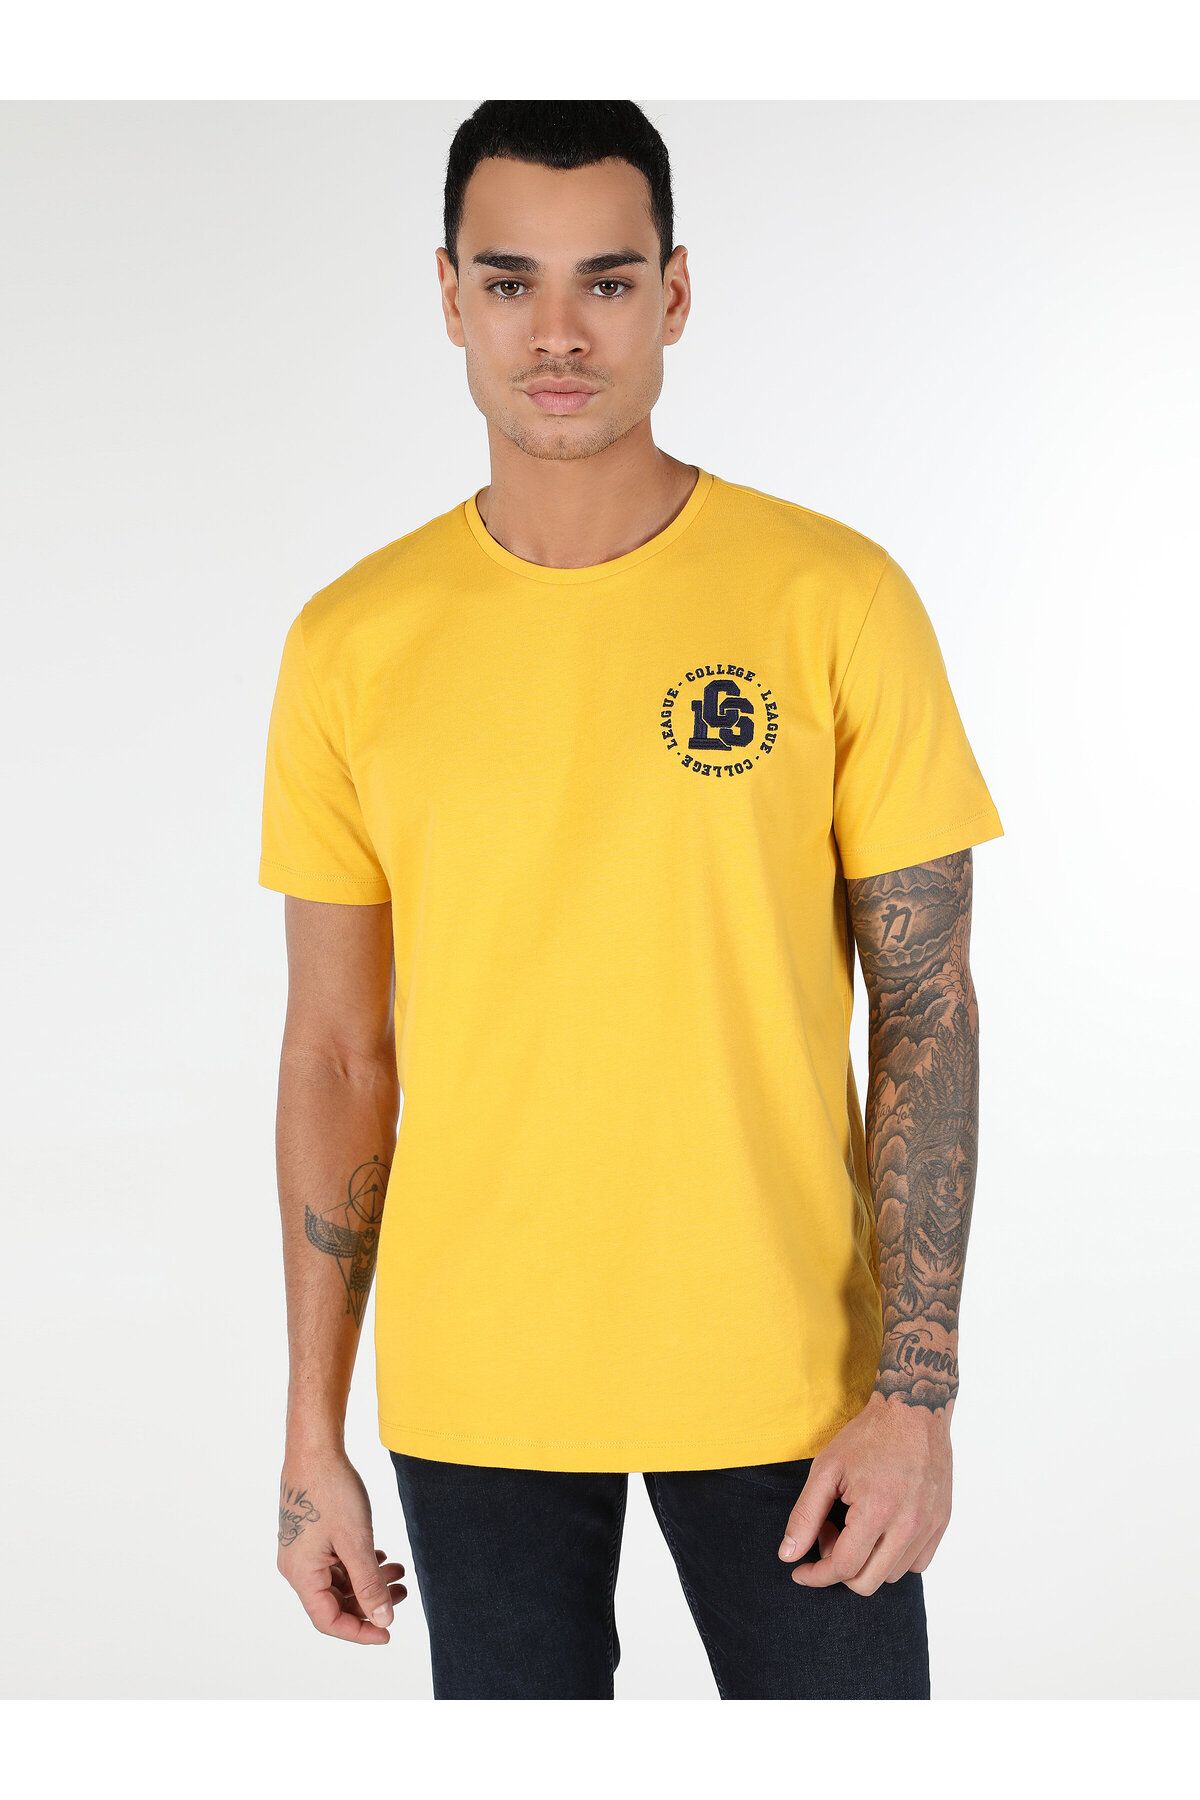 Colin’s یقه دوچرخه تناسب منظم چاپ شده مردان زرد رنگ T Shirt